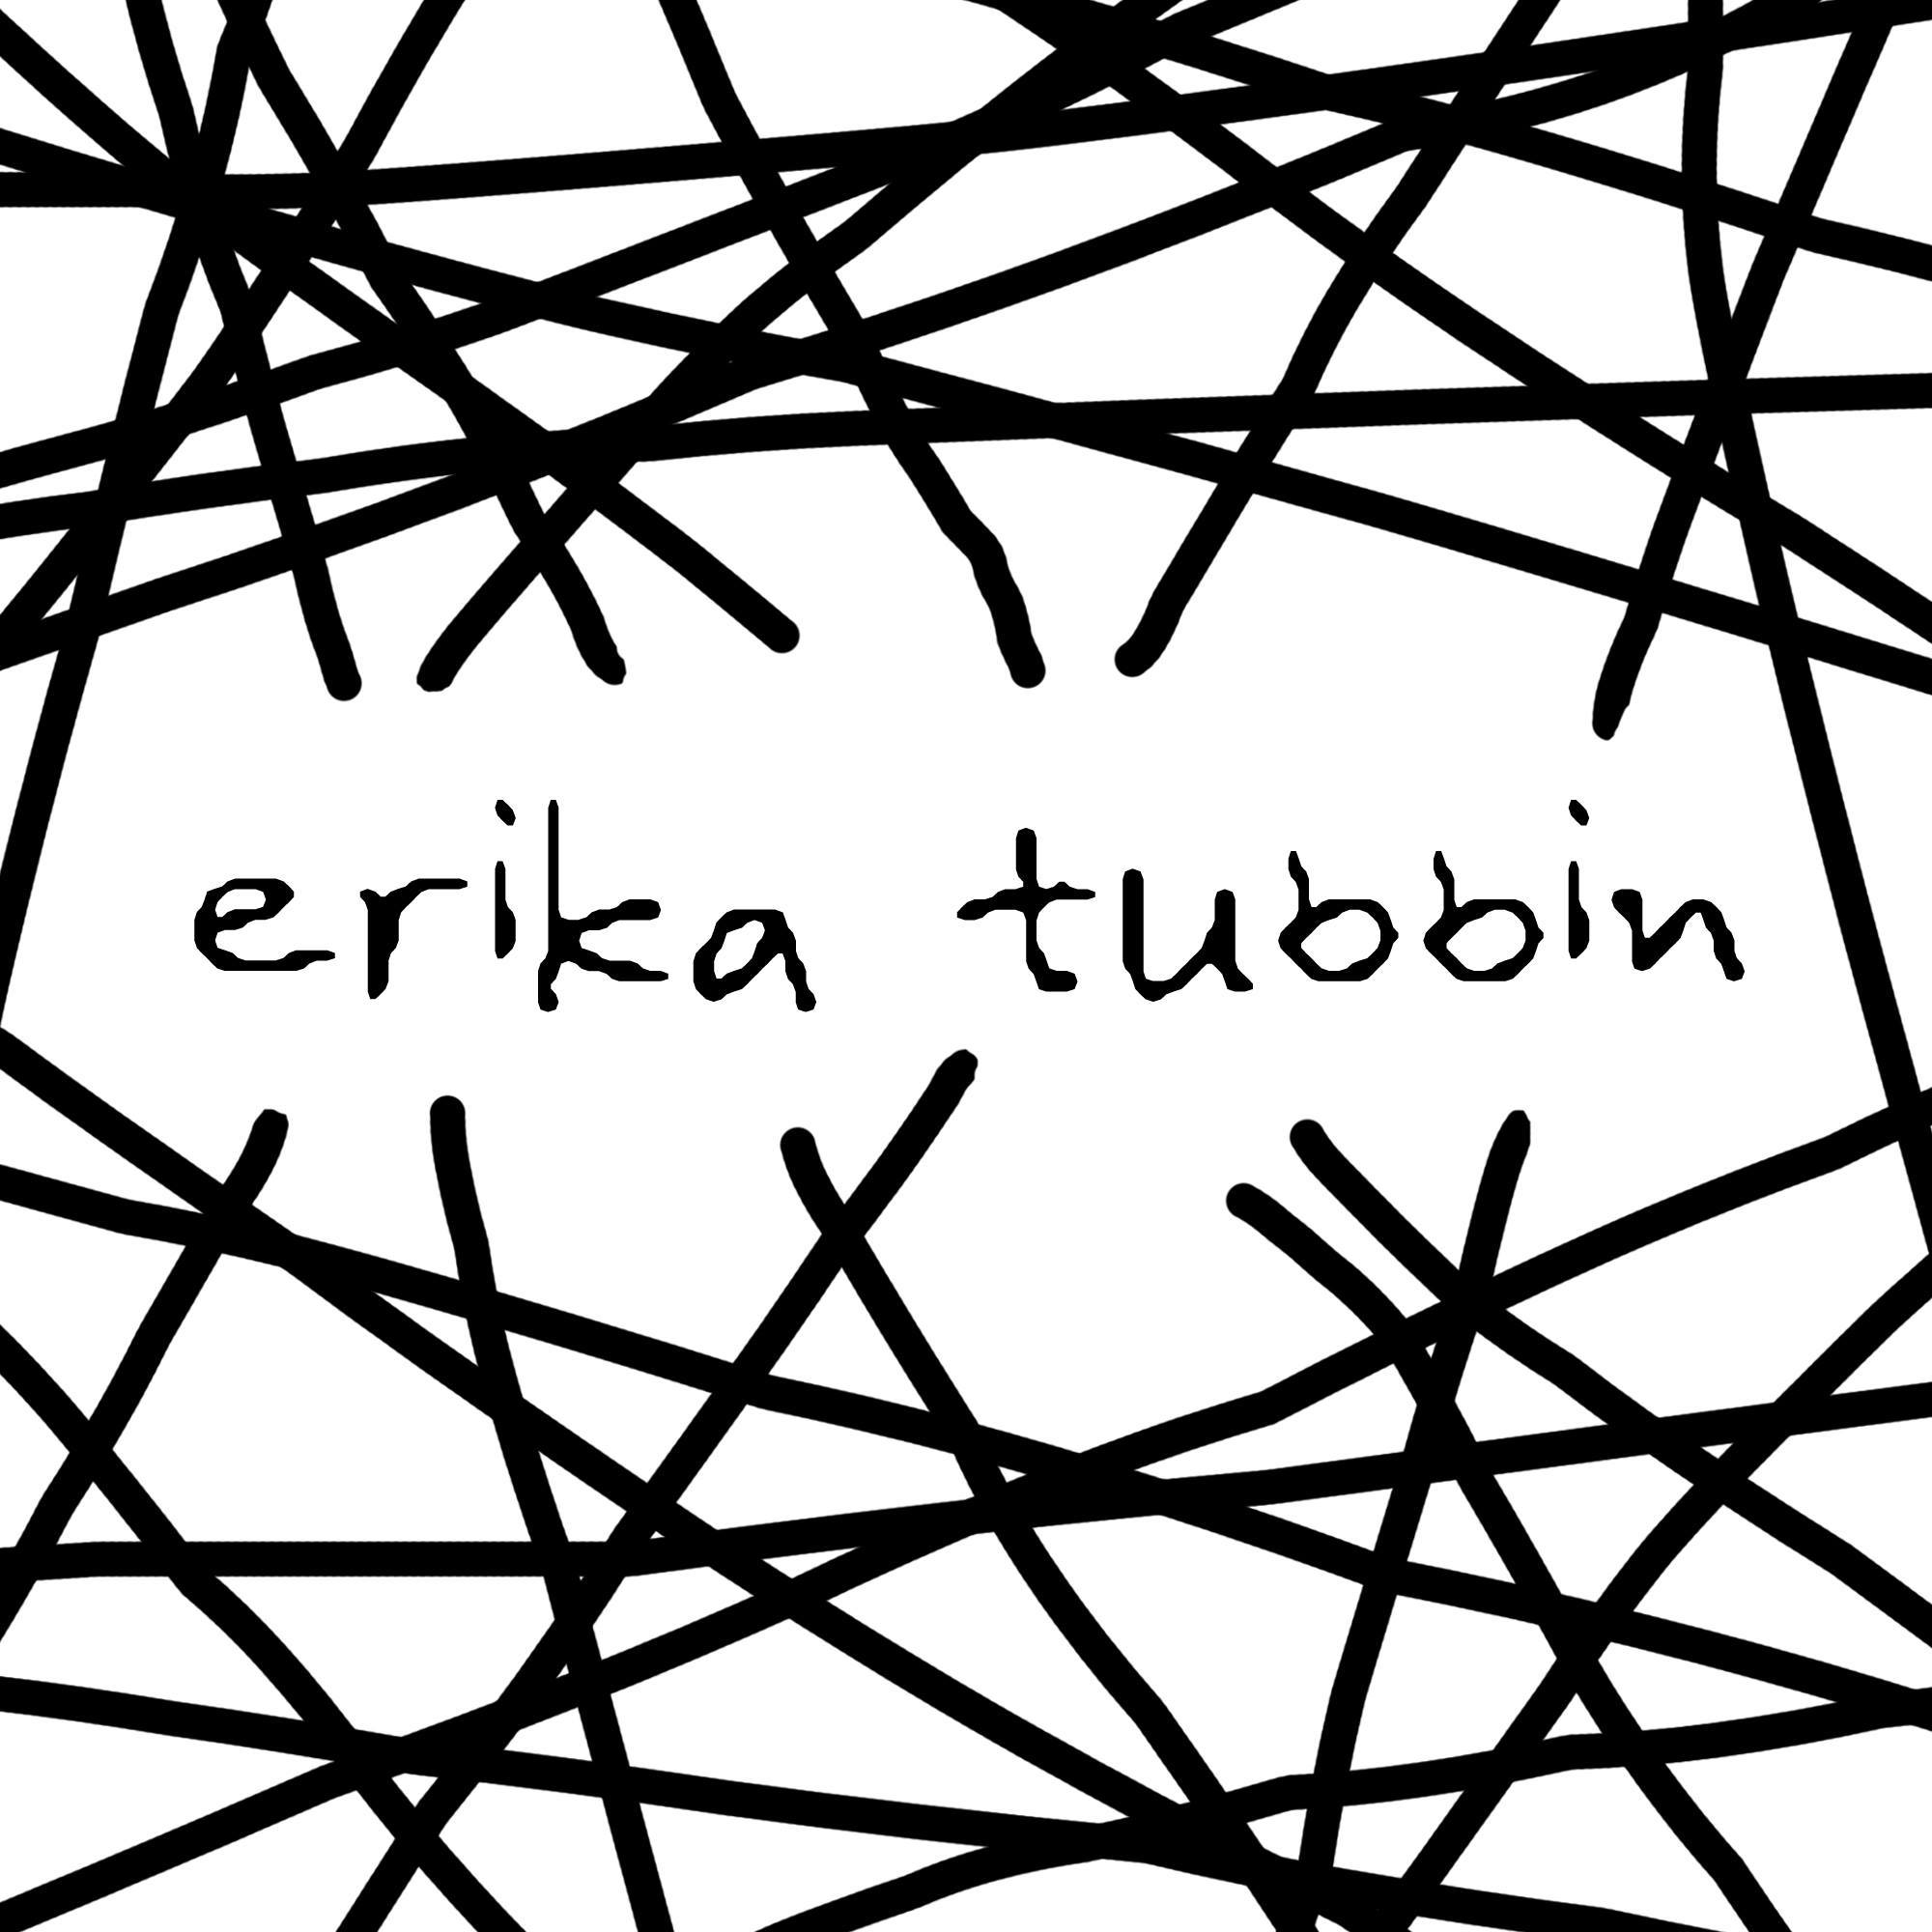 Vaatdoek / Dish Cloth SWEDISH FIKA – Erika Tubbin